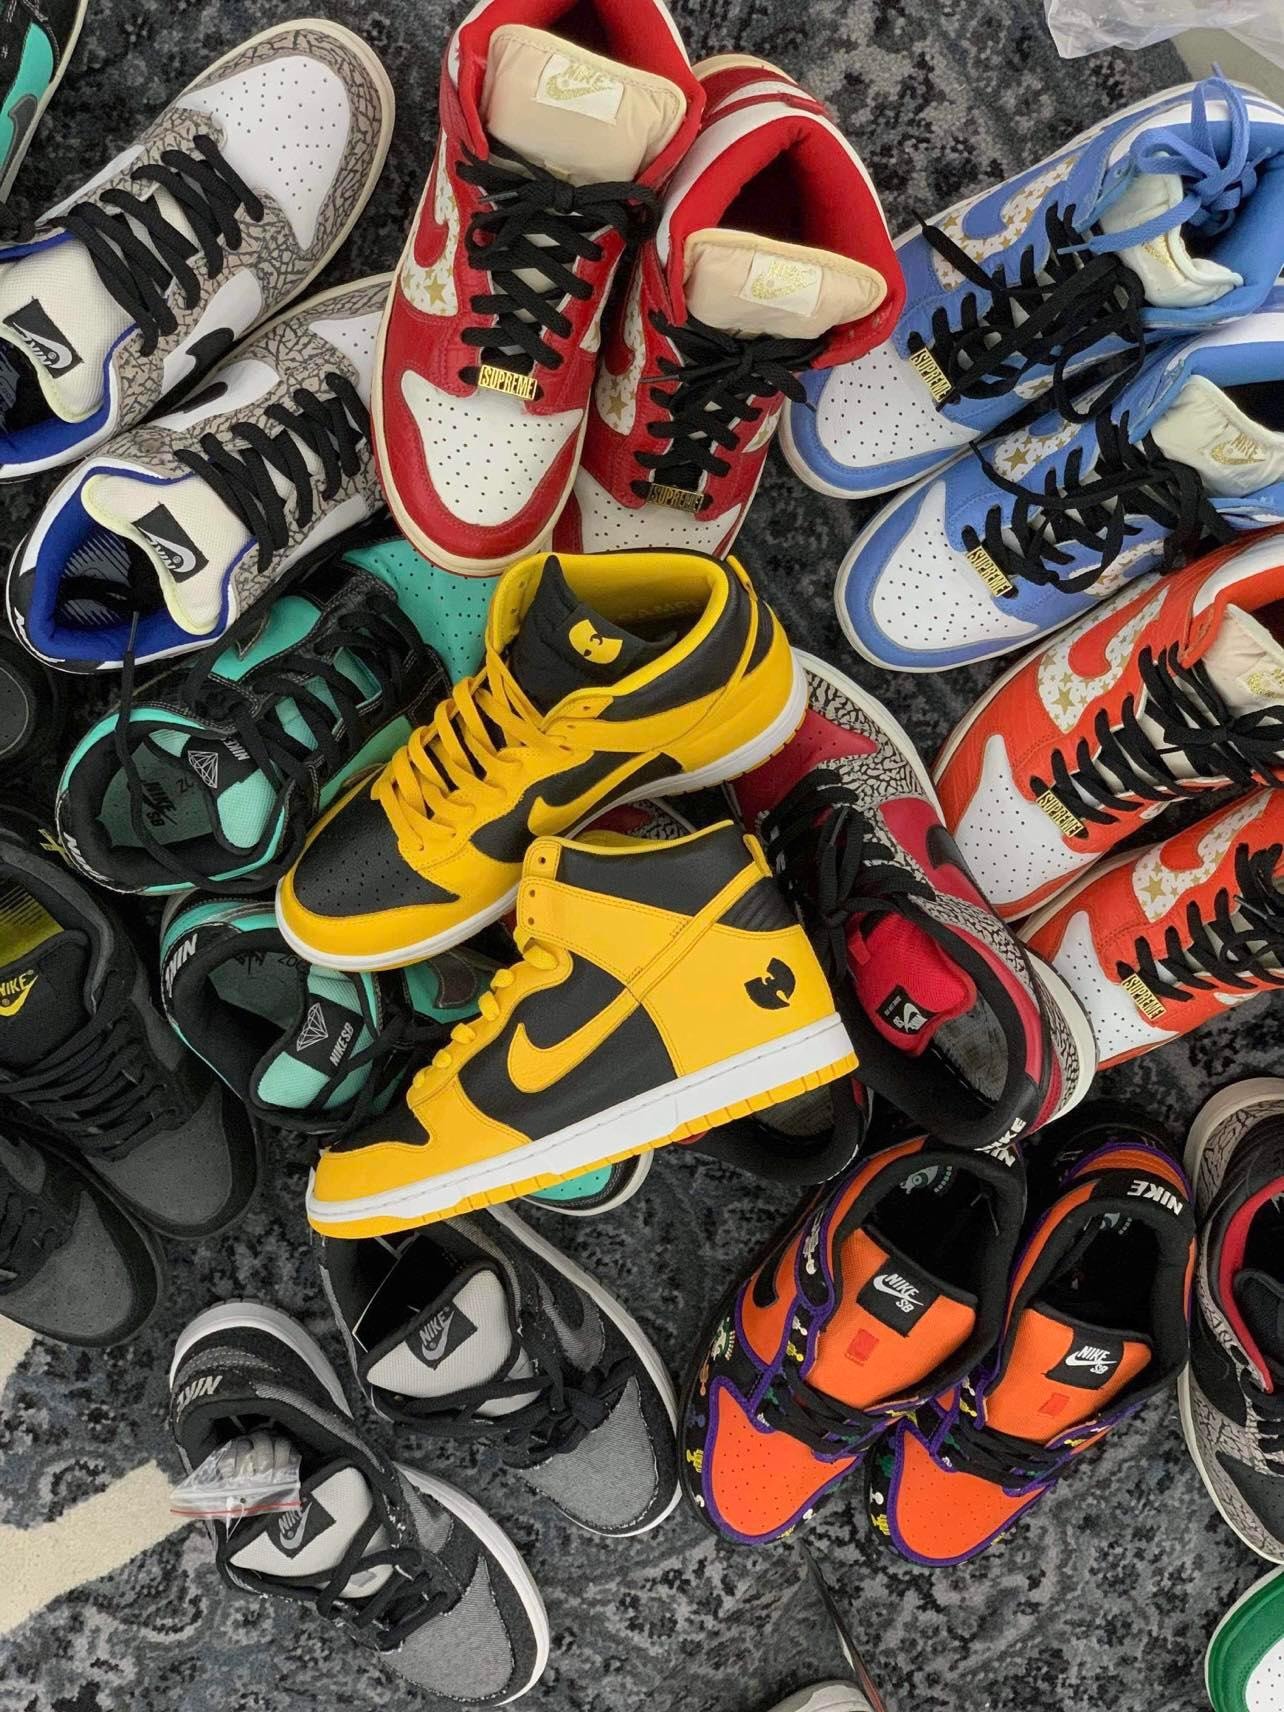 FLOMMARKET 最新球鞋收藏展覽「Back to the Best of Nike Dunks」情報公開